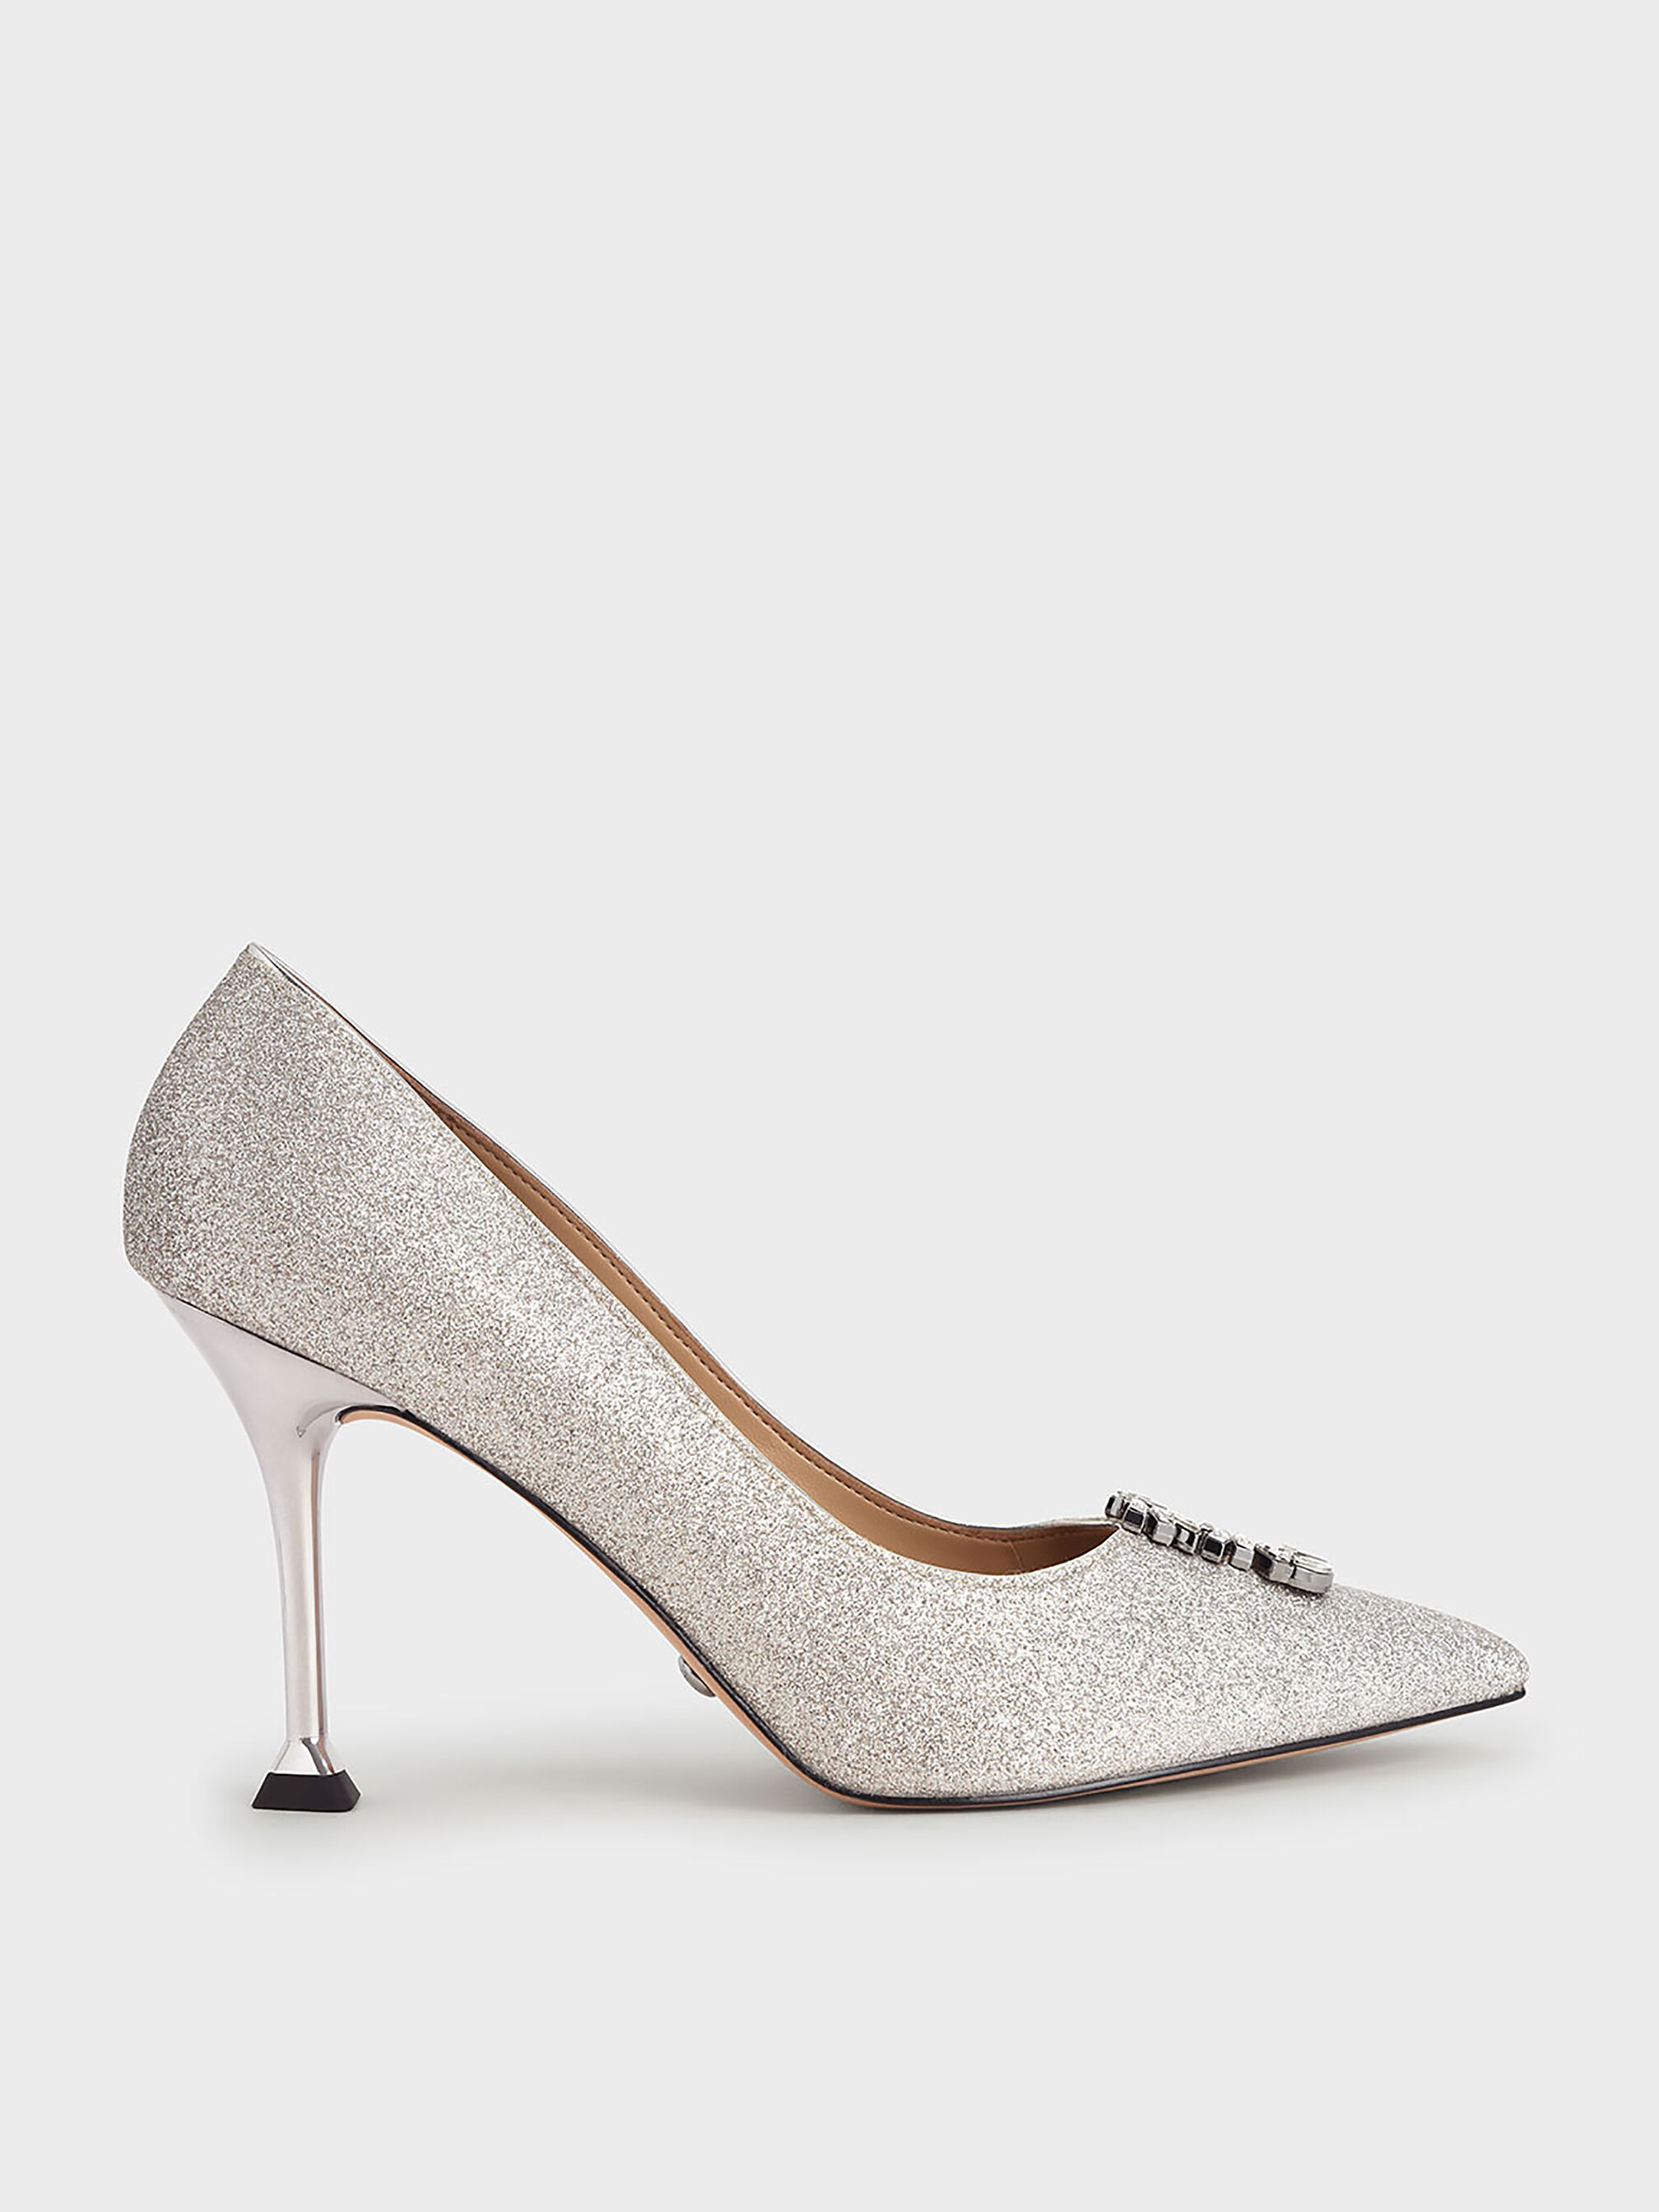 BETUSH Silver Metallic Mirror Women's High Heel Wedding Bridal Sandal –  Zerga Shoes